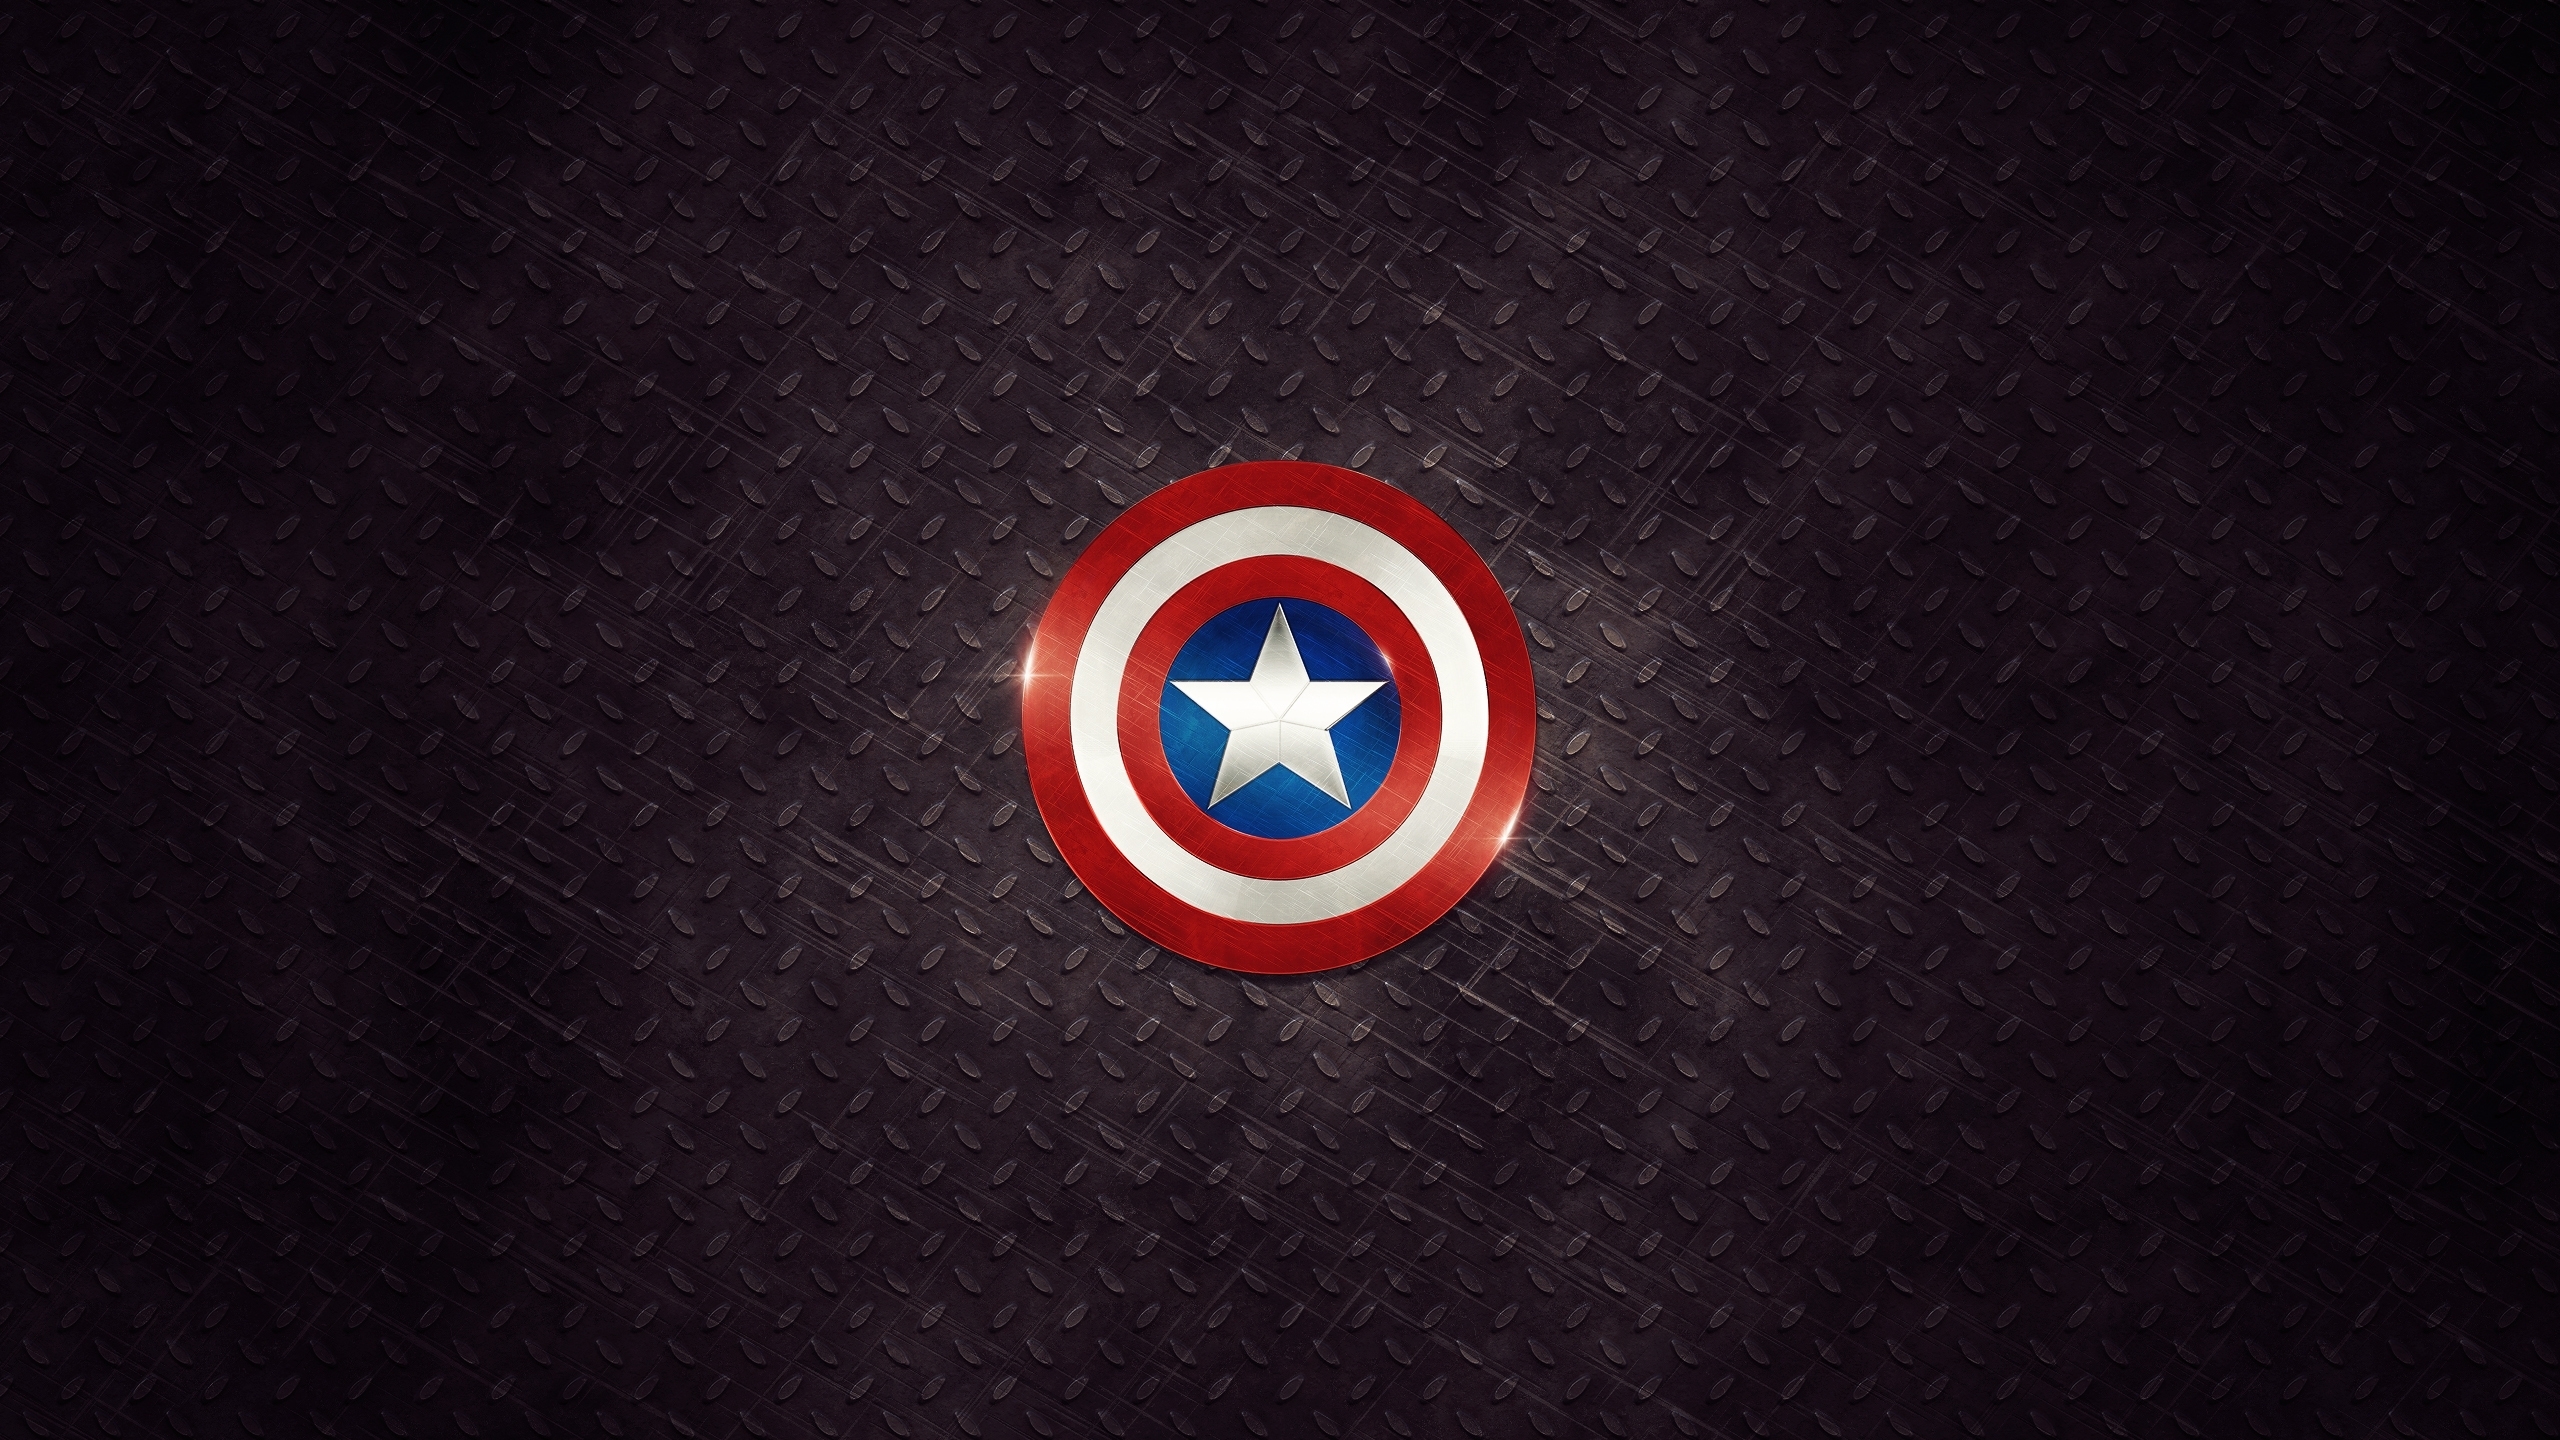 Captain America Logo Mac Wallpaper Download Free Mac Wallpapers